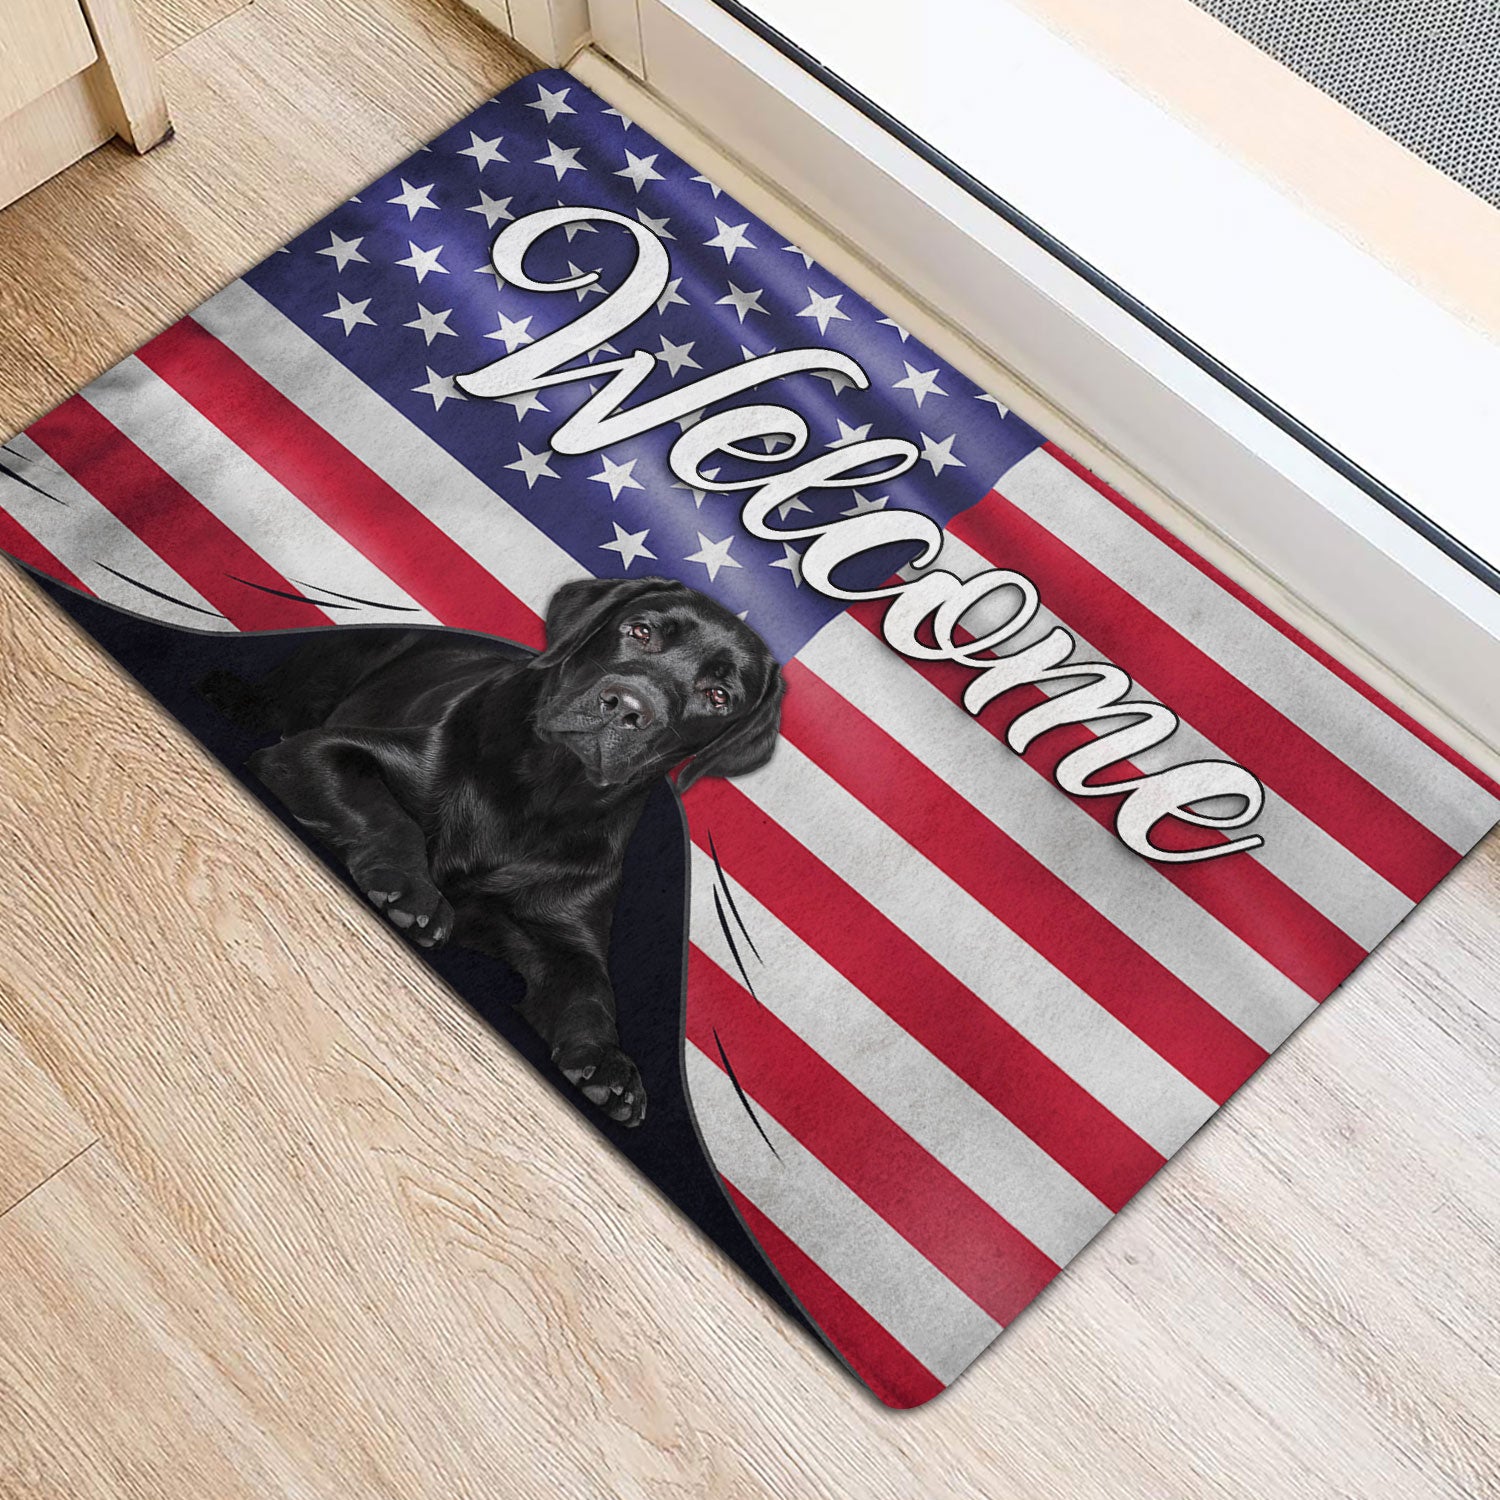 Ohaprints-Doormat-Outdoor-Indoor-Funny-Black-Labrador-Dog-Welcome-American-Flag-Usa-Patriotic-Rubber-Door-Mat-77-